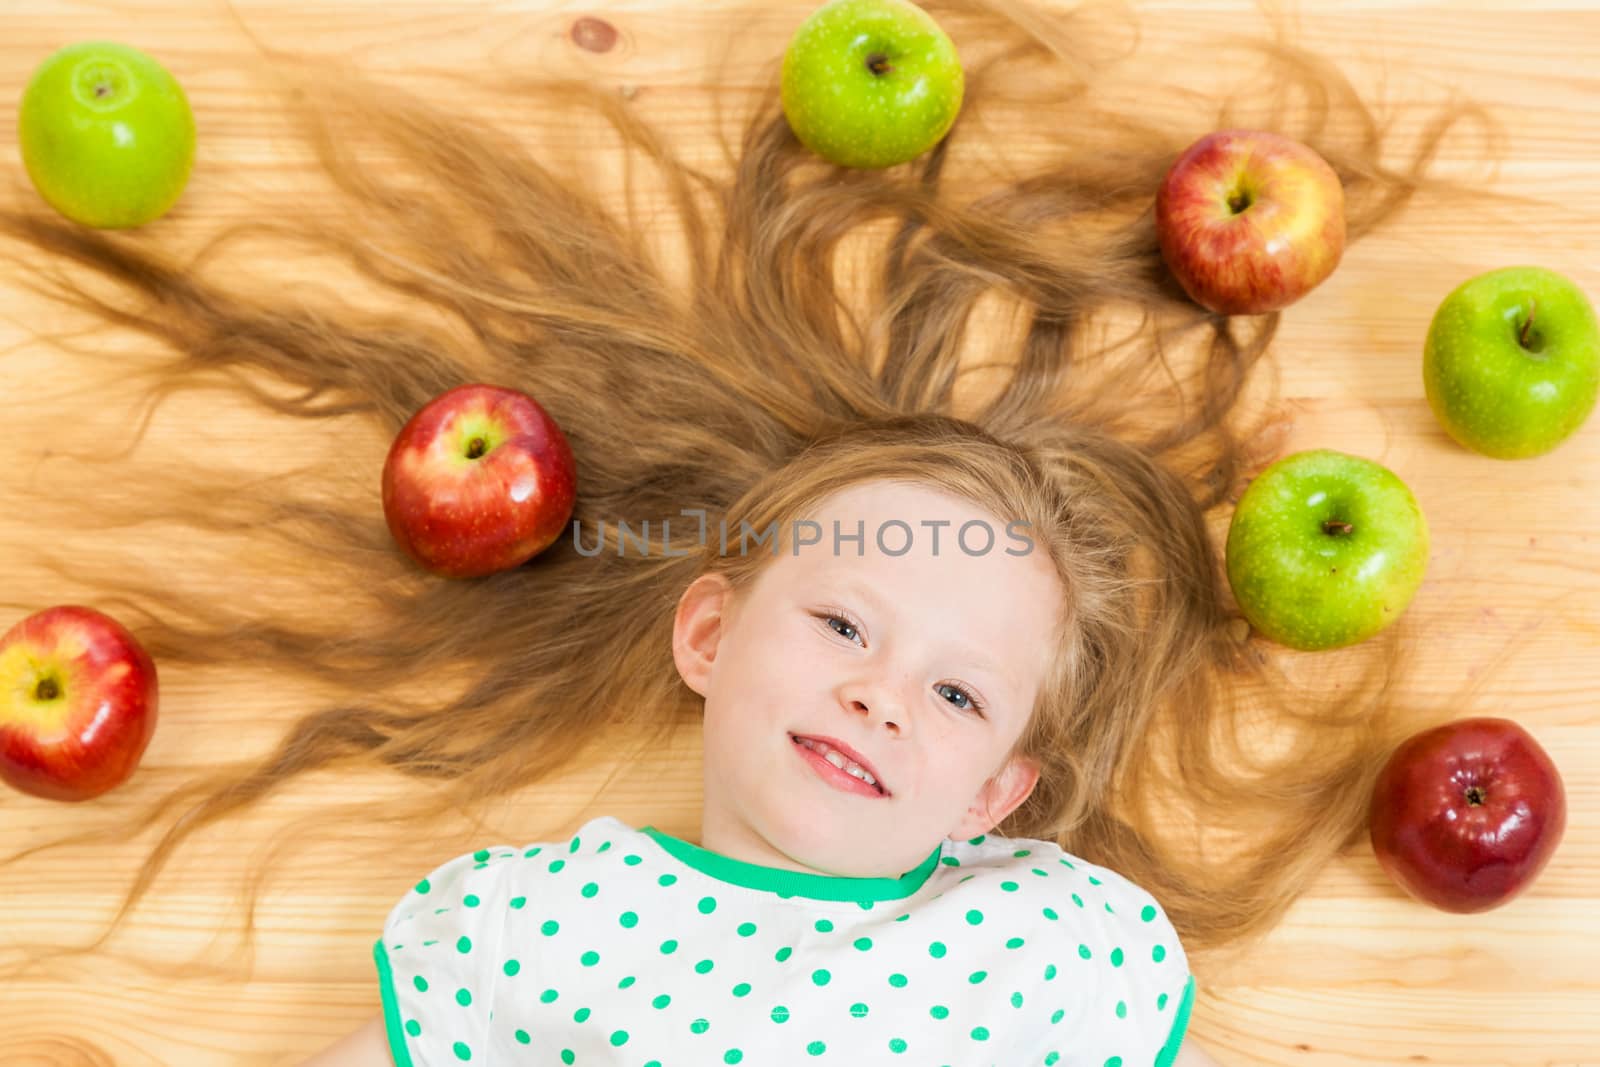 the little girl among apples by sveter